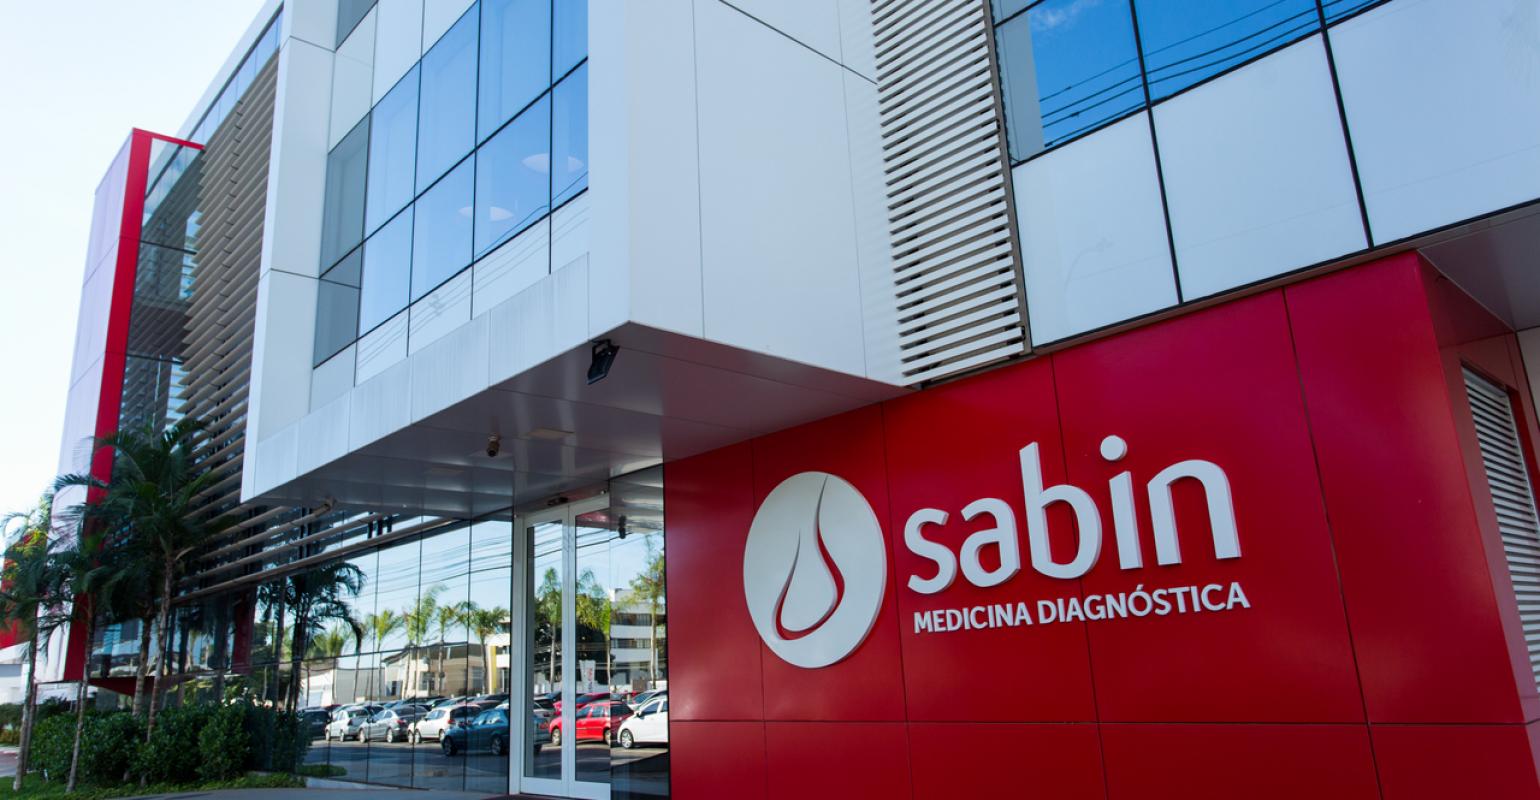 Grupo Sabin promove ações que ajudam a reduzir os impactos da pandemia